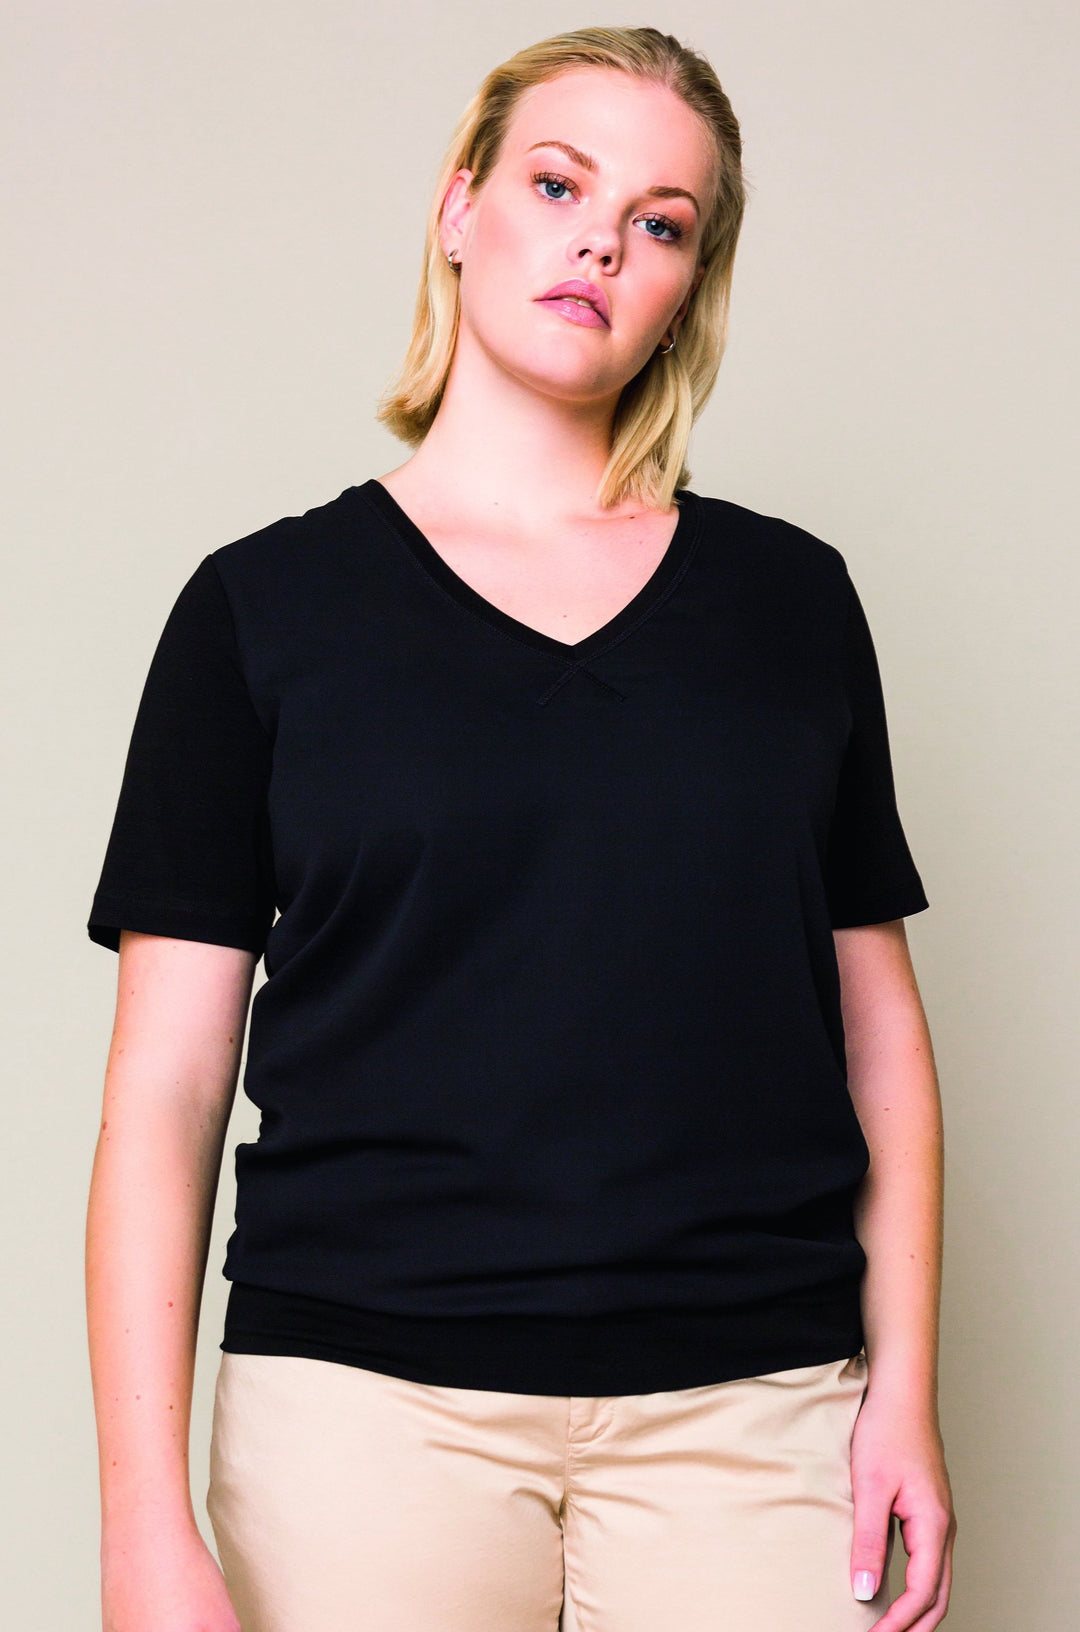 zwart t-shirt met v-hals - xandres essentials - - grote maten - dameskleding - kledingwinkel - herent - leuven